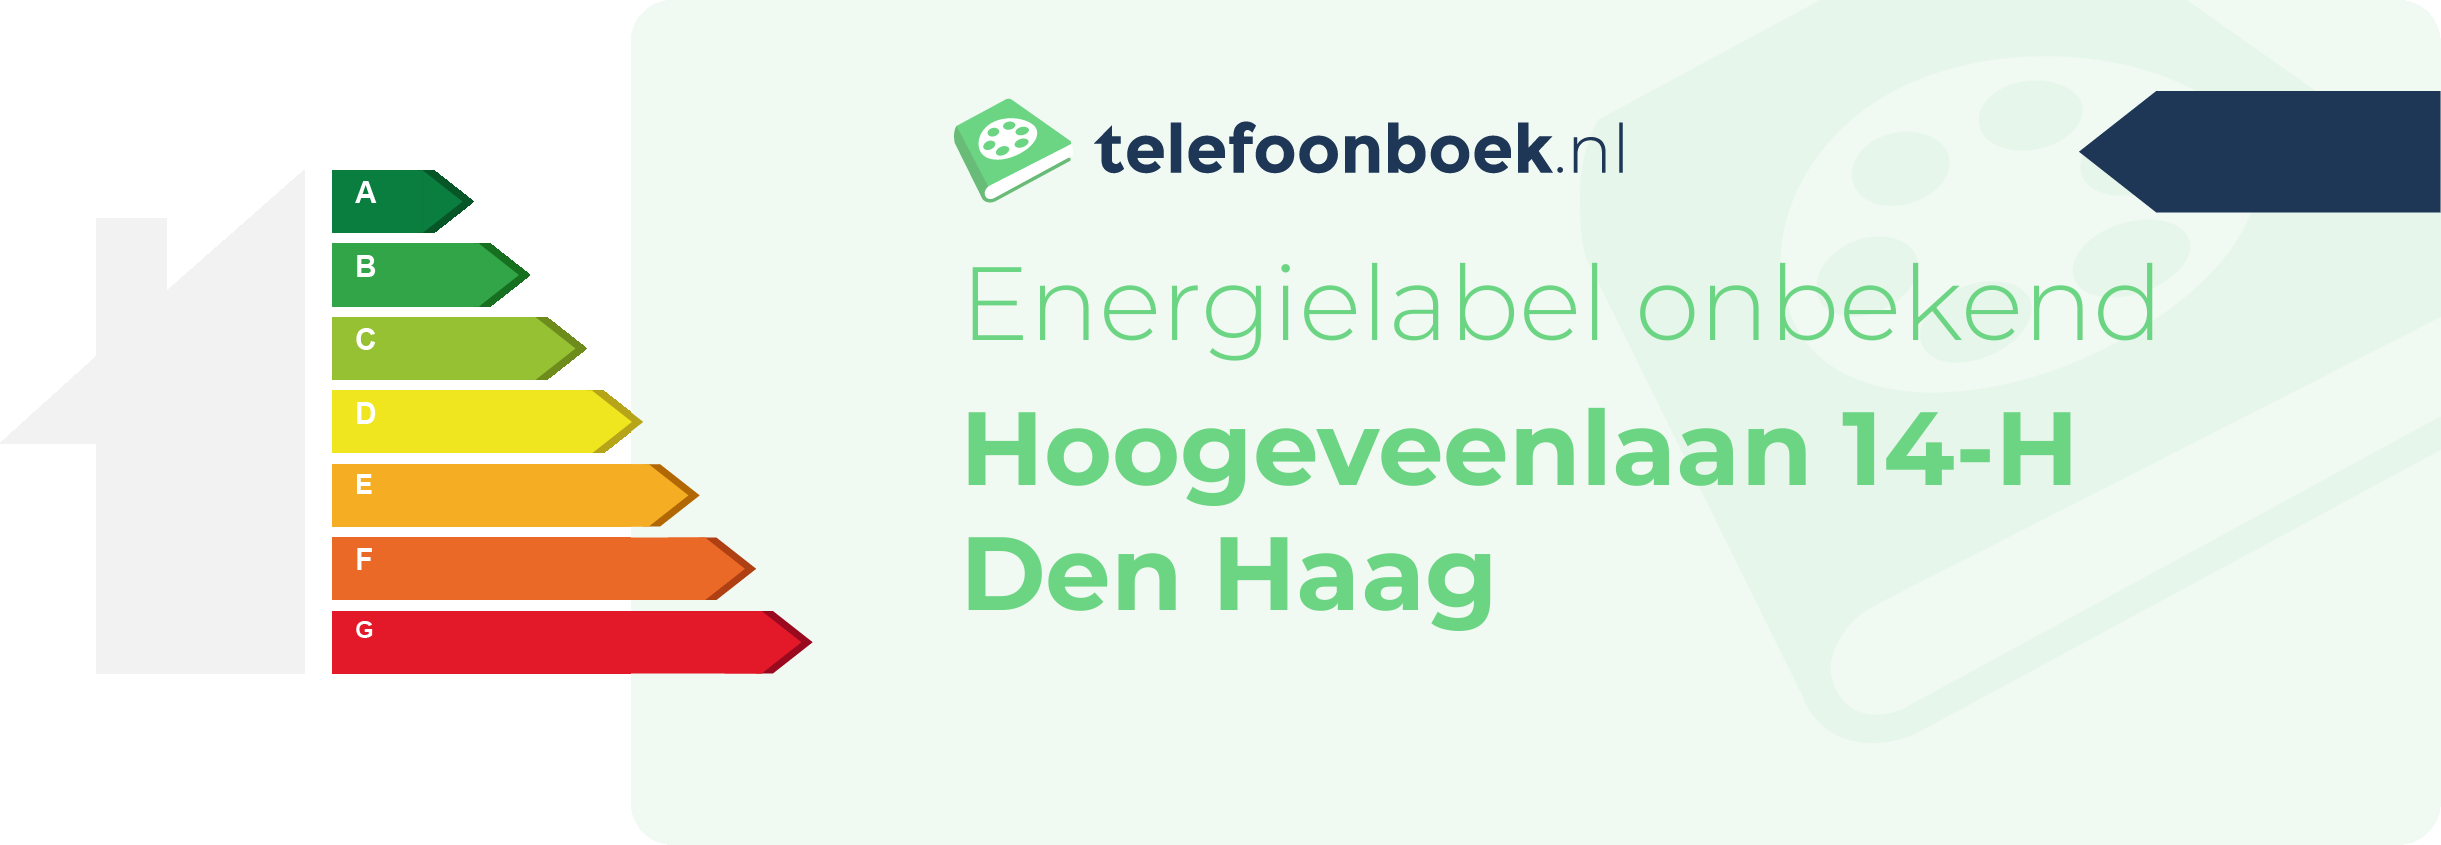 Energielabel Hoogeveenlaan 14-H Den Haag